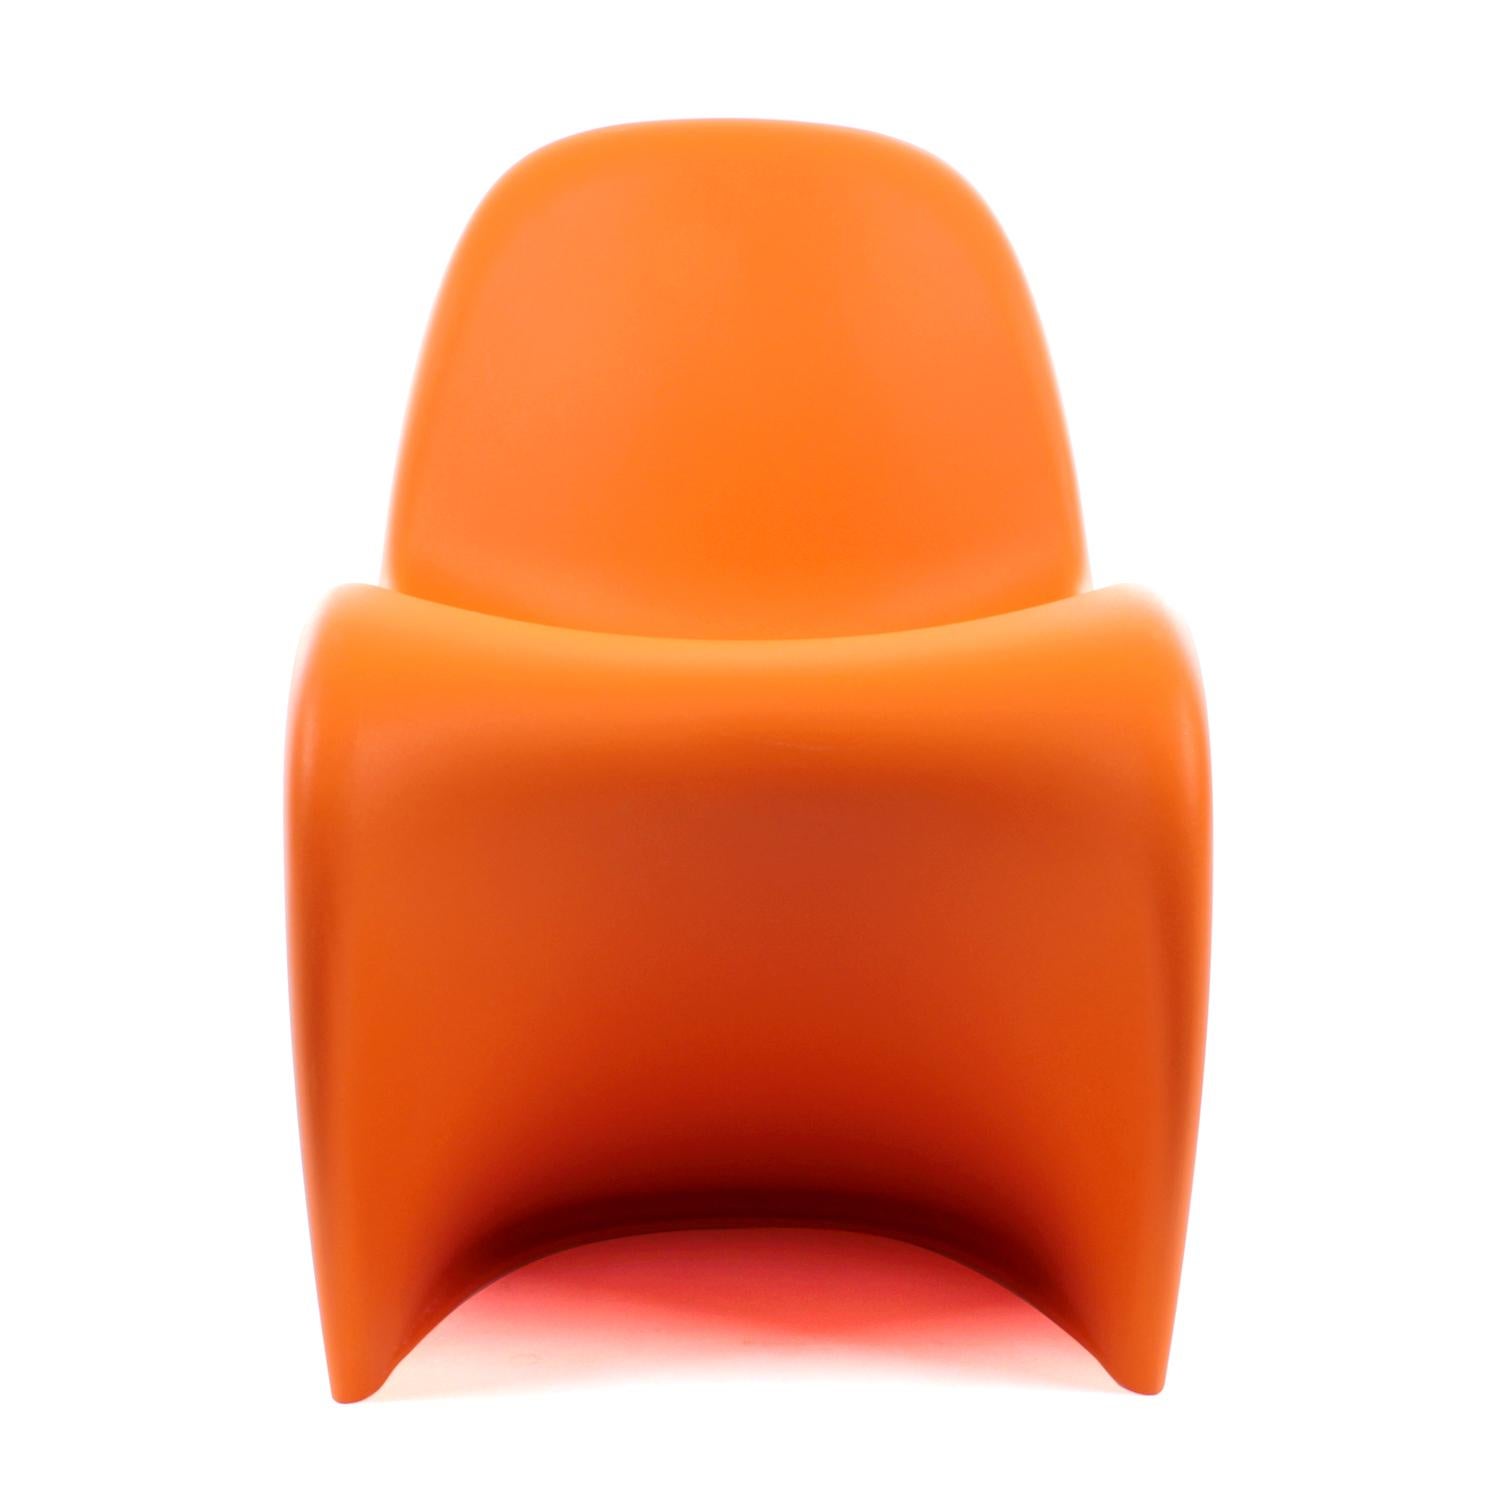 bright orange chair